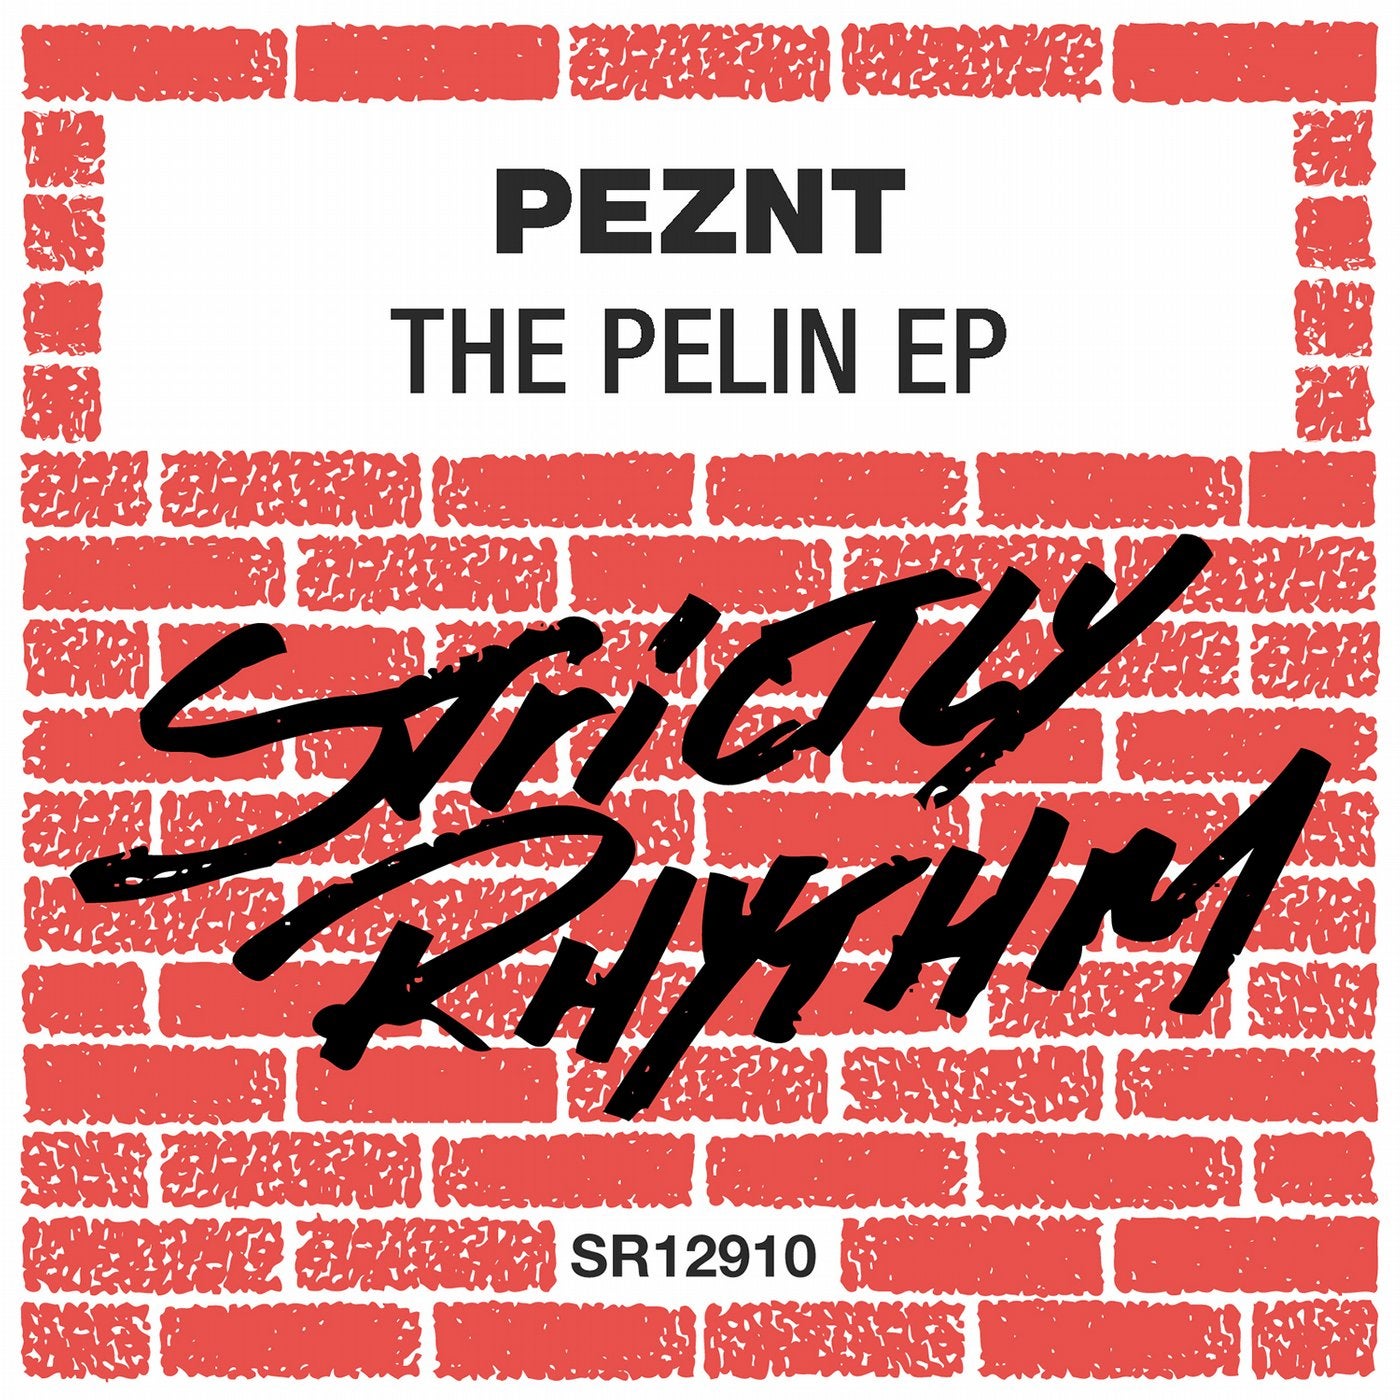 The Pelin EP